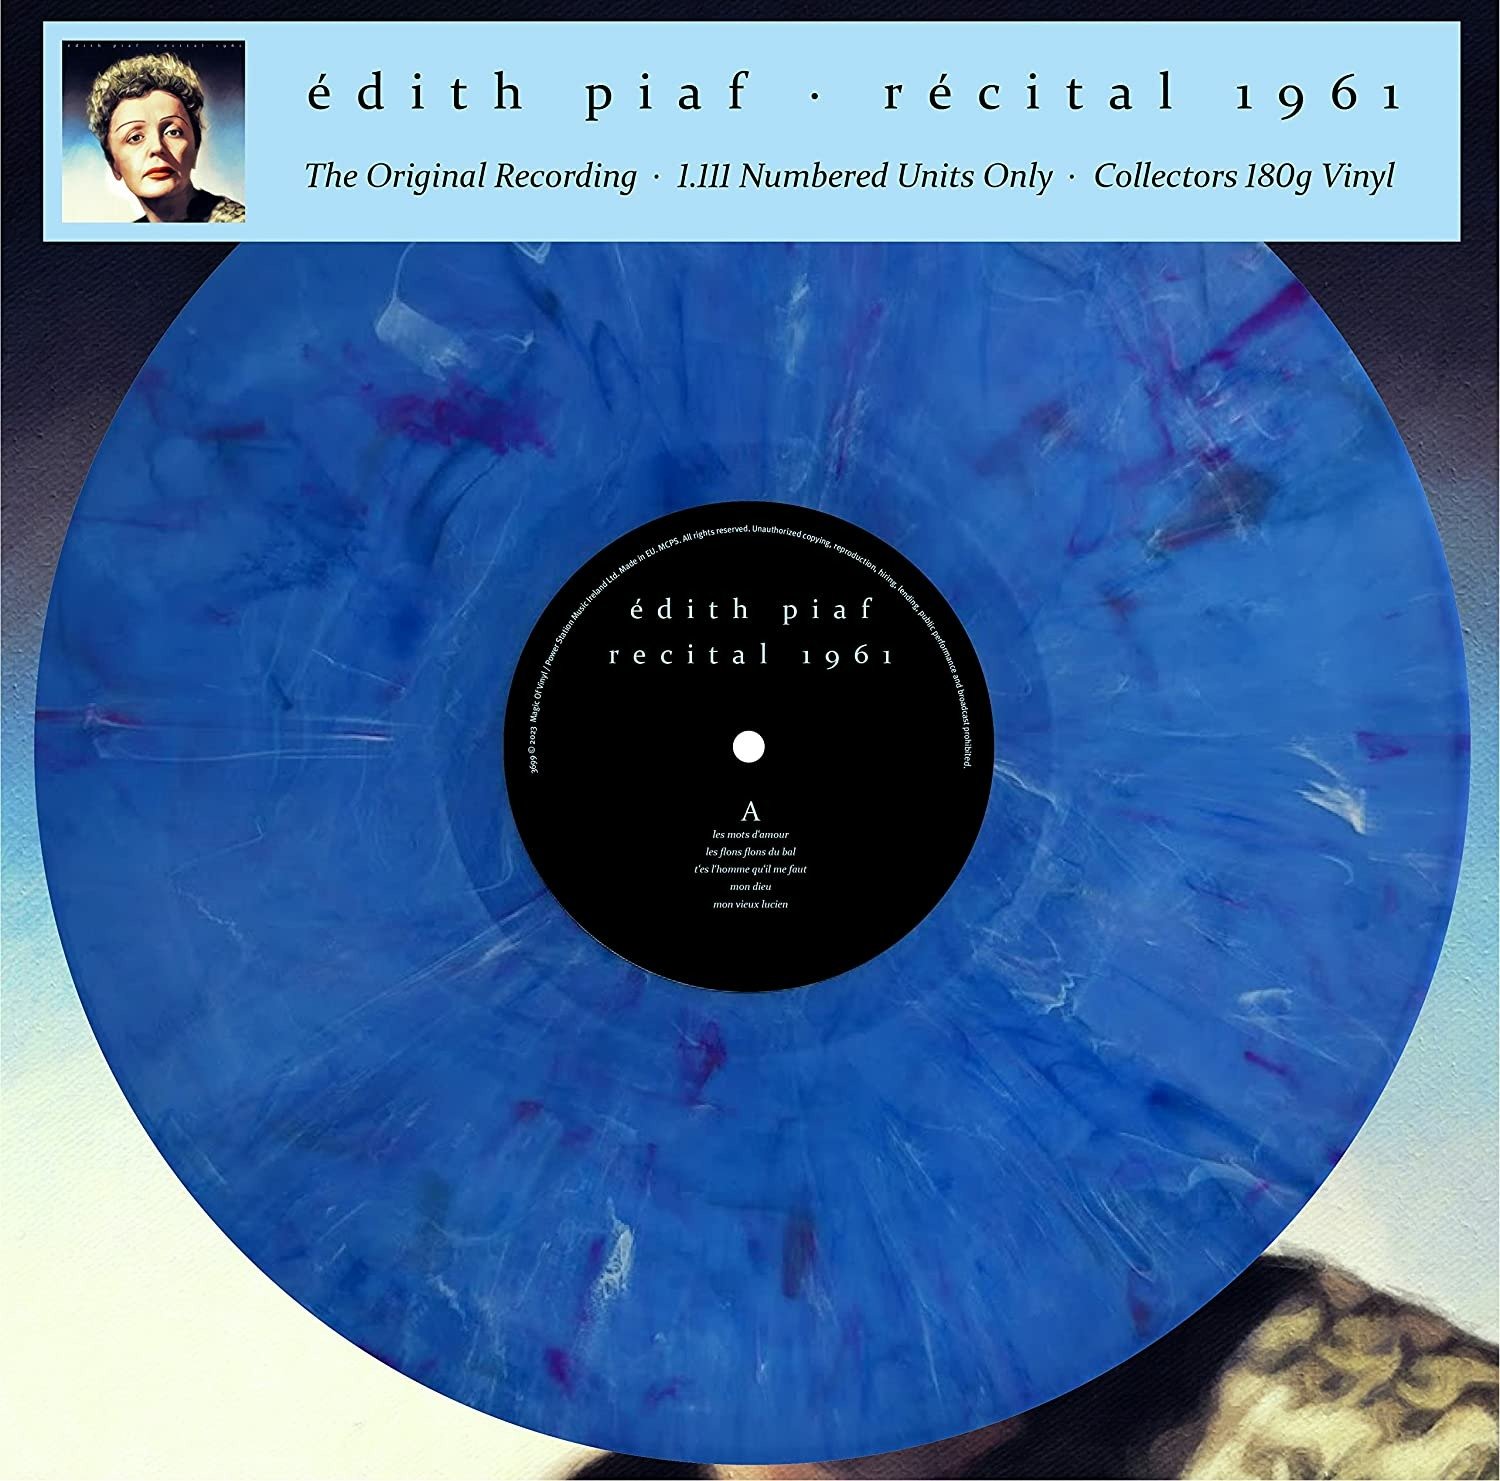 CD Shop - PIAF, EDITH RECITAL 1961 (THE ORIGINAL RECORDING)